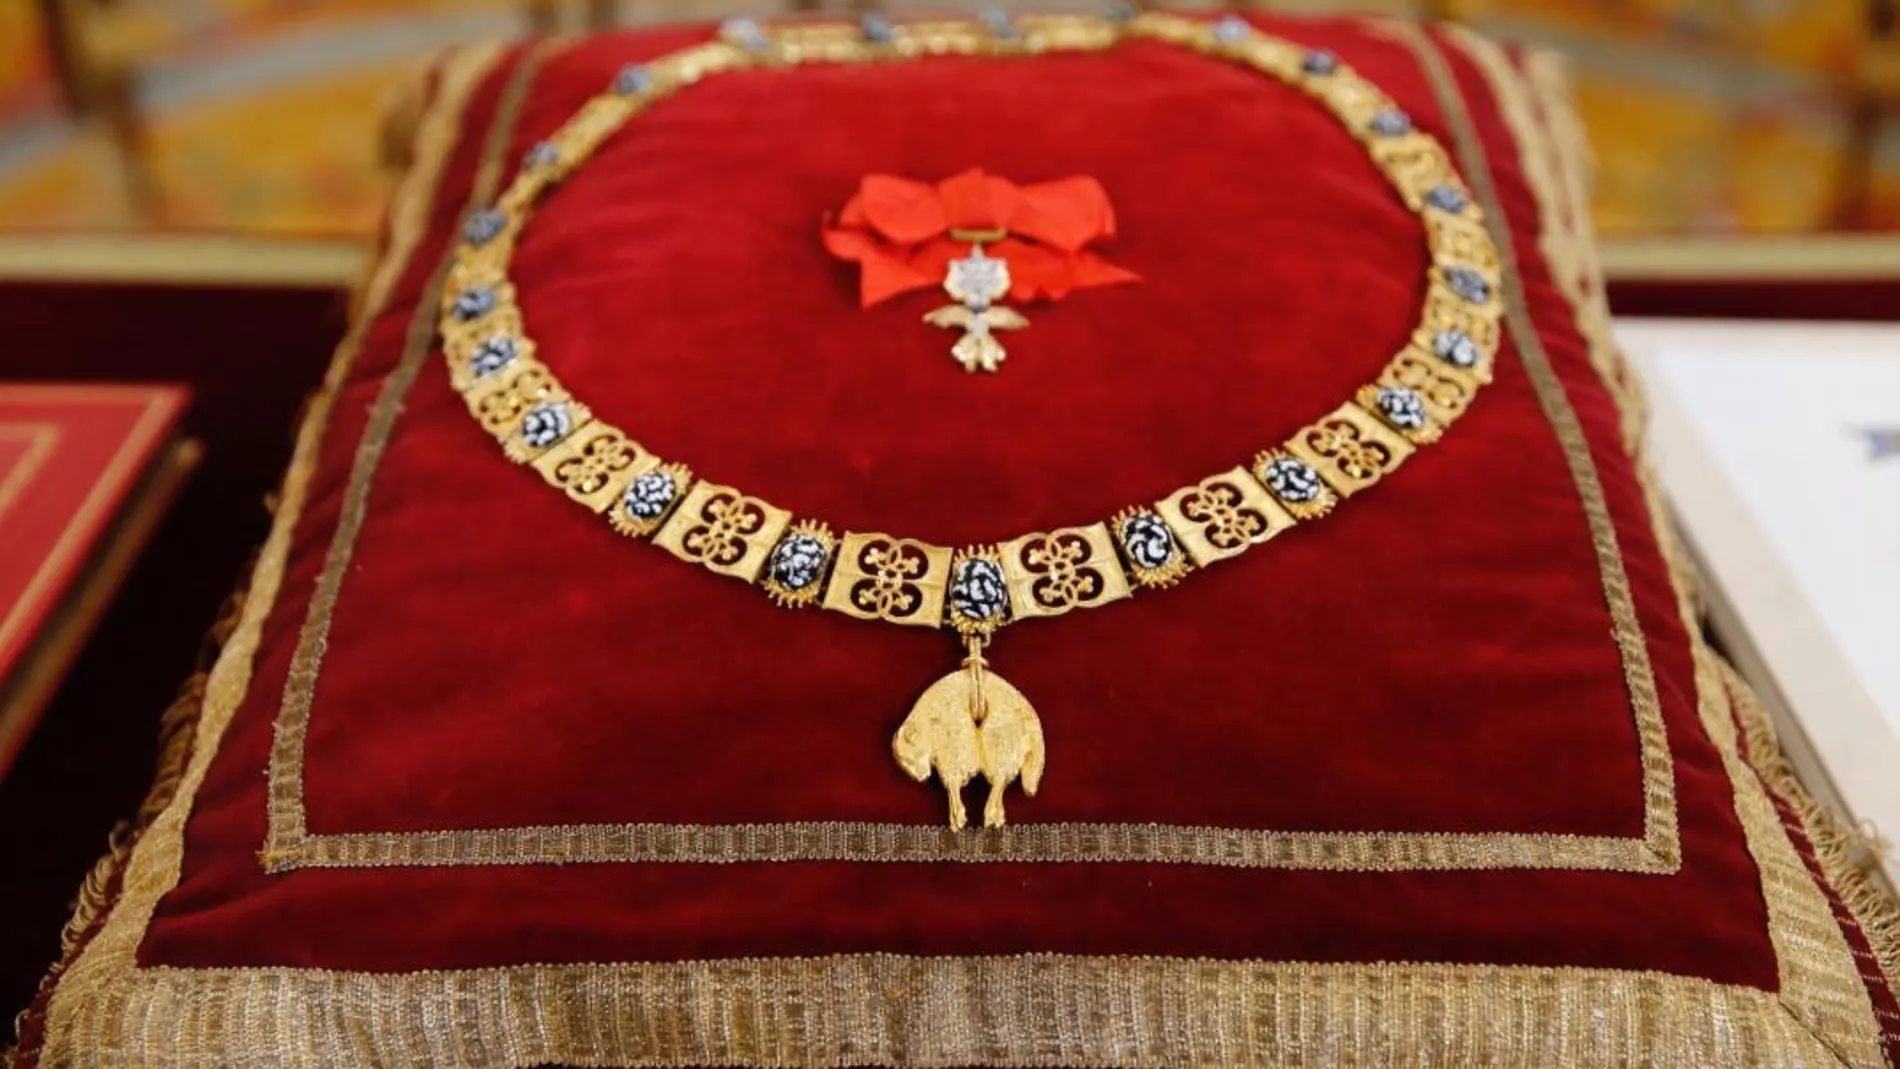 Detalle del Collar del Toisón de Oro, la máxima distinción que concede la Familia Real española. EFE/Mariscal